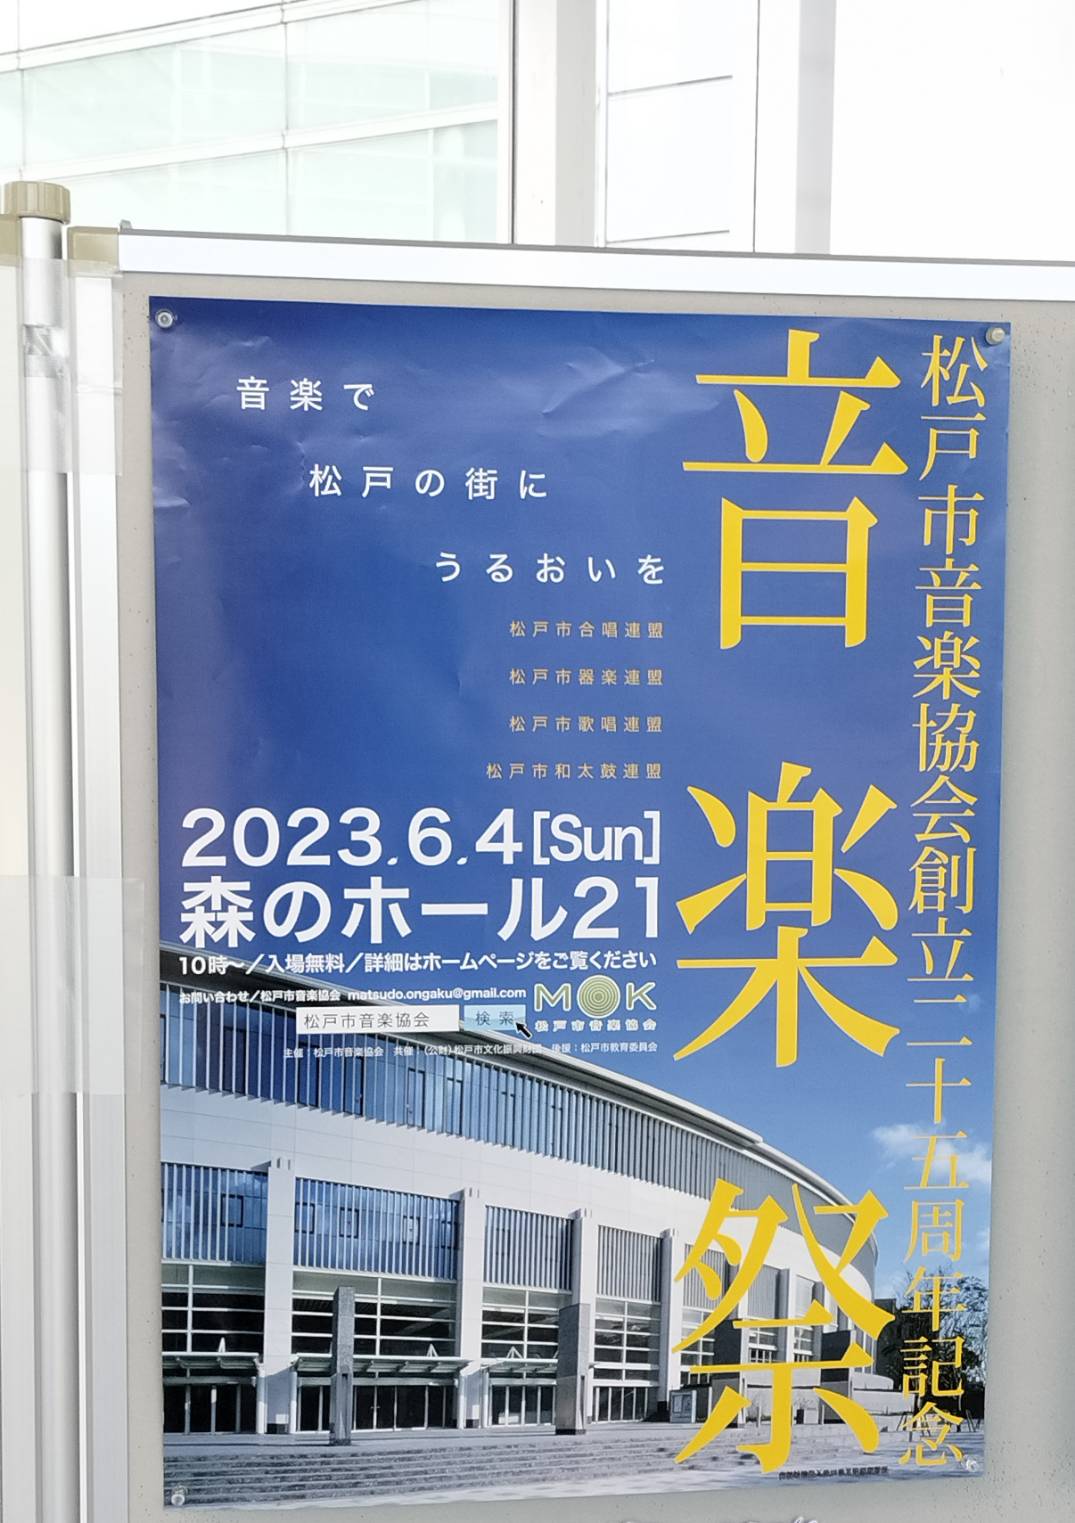 松戸市音楽協会創立30周年記念 音楽祭2023森のホール21入場無料